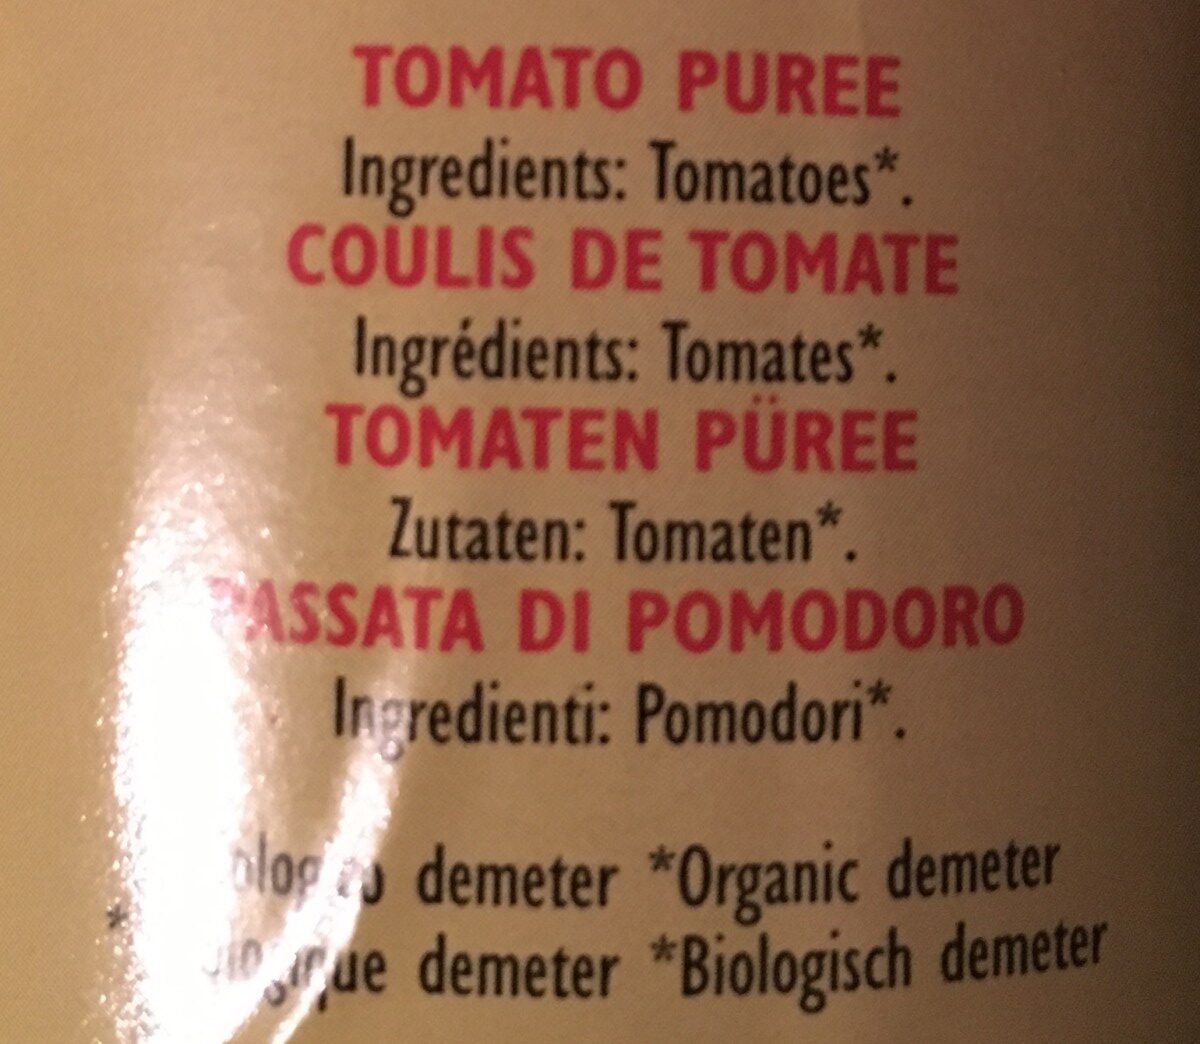 Passata di Pomodoro - Ingredients - fr